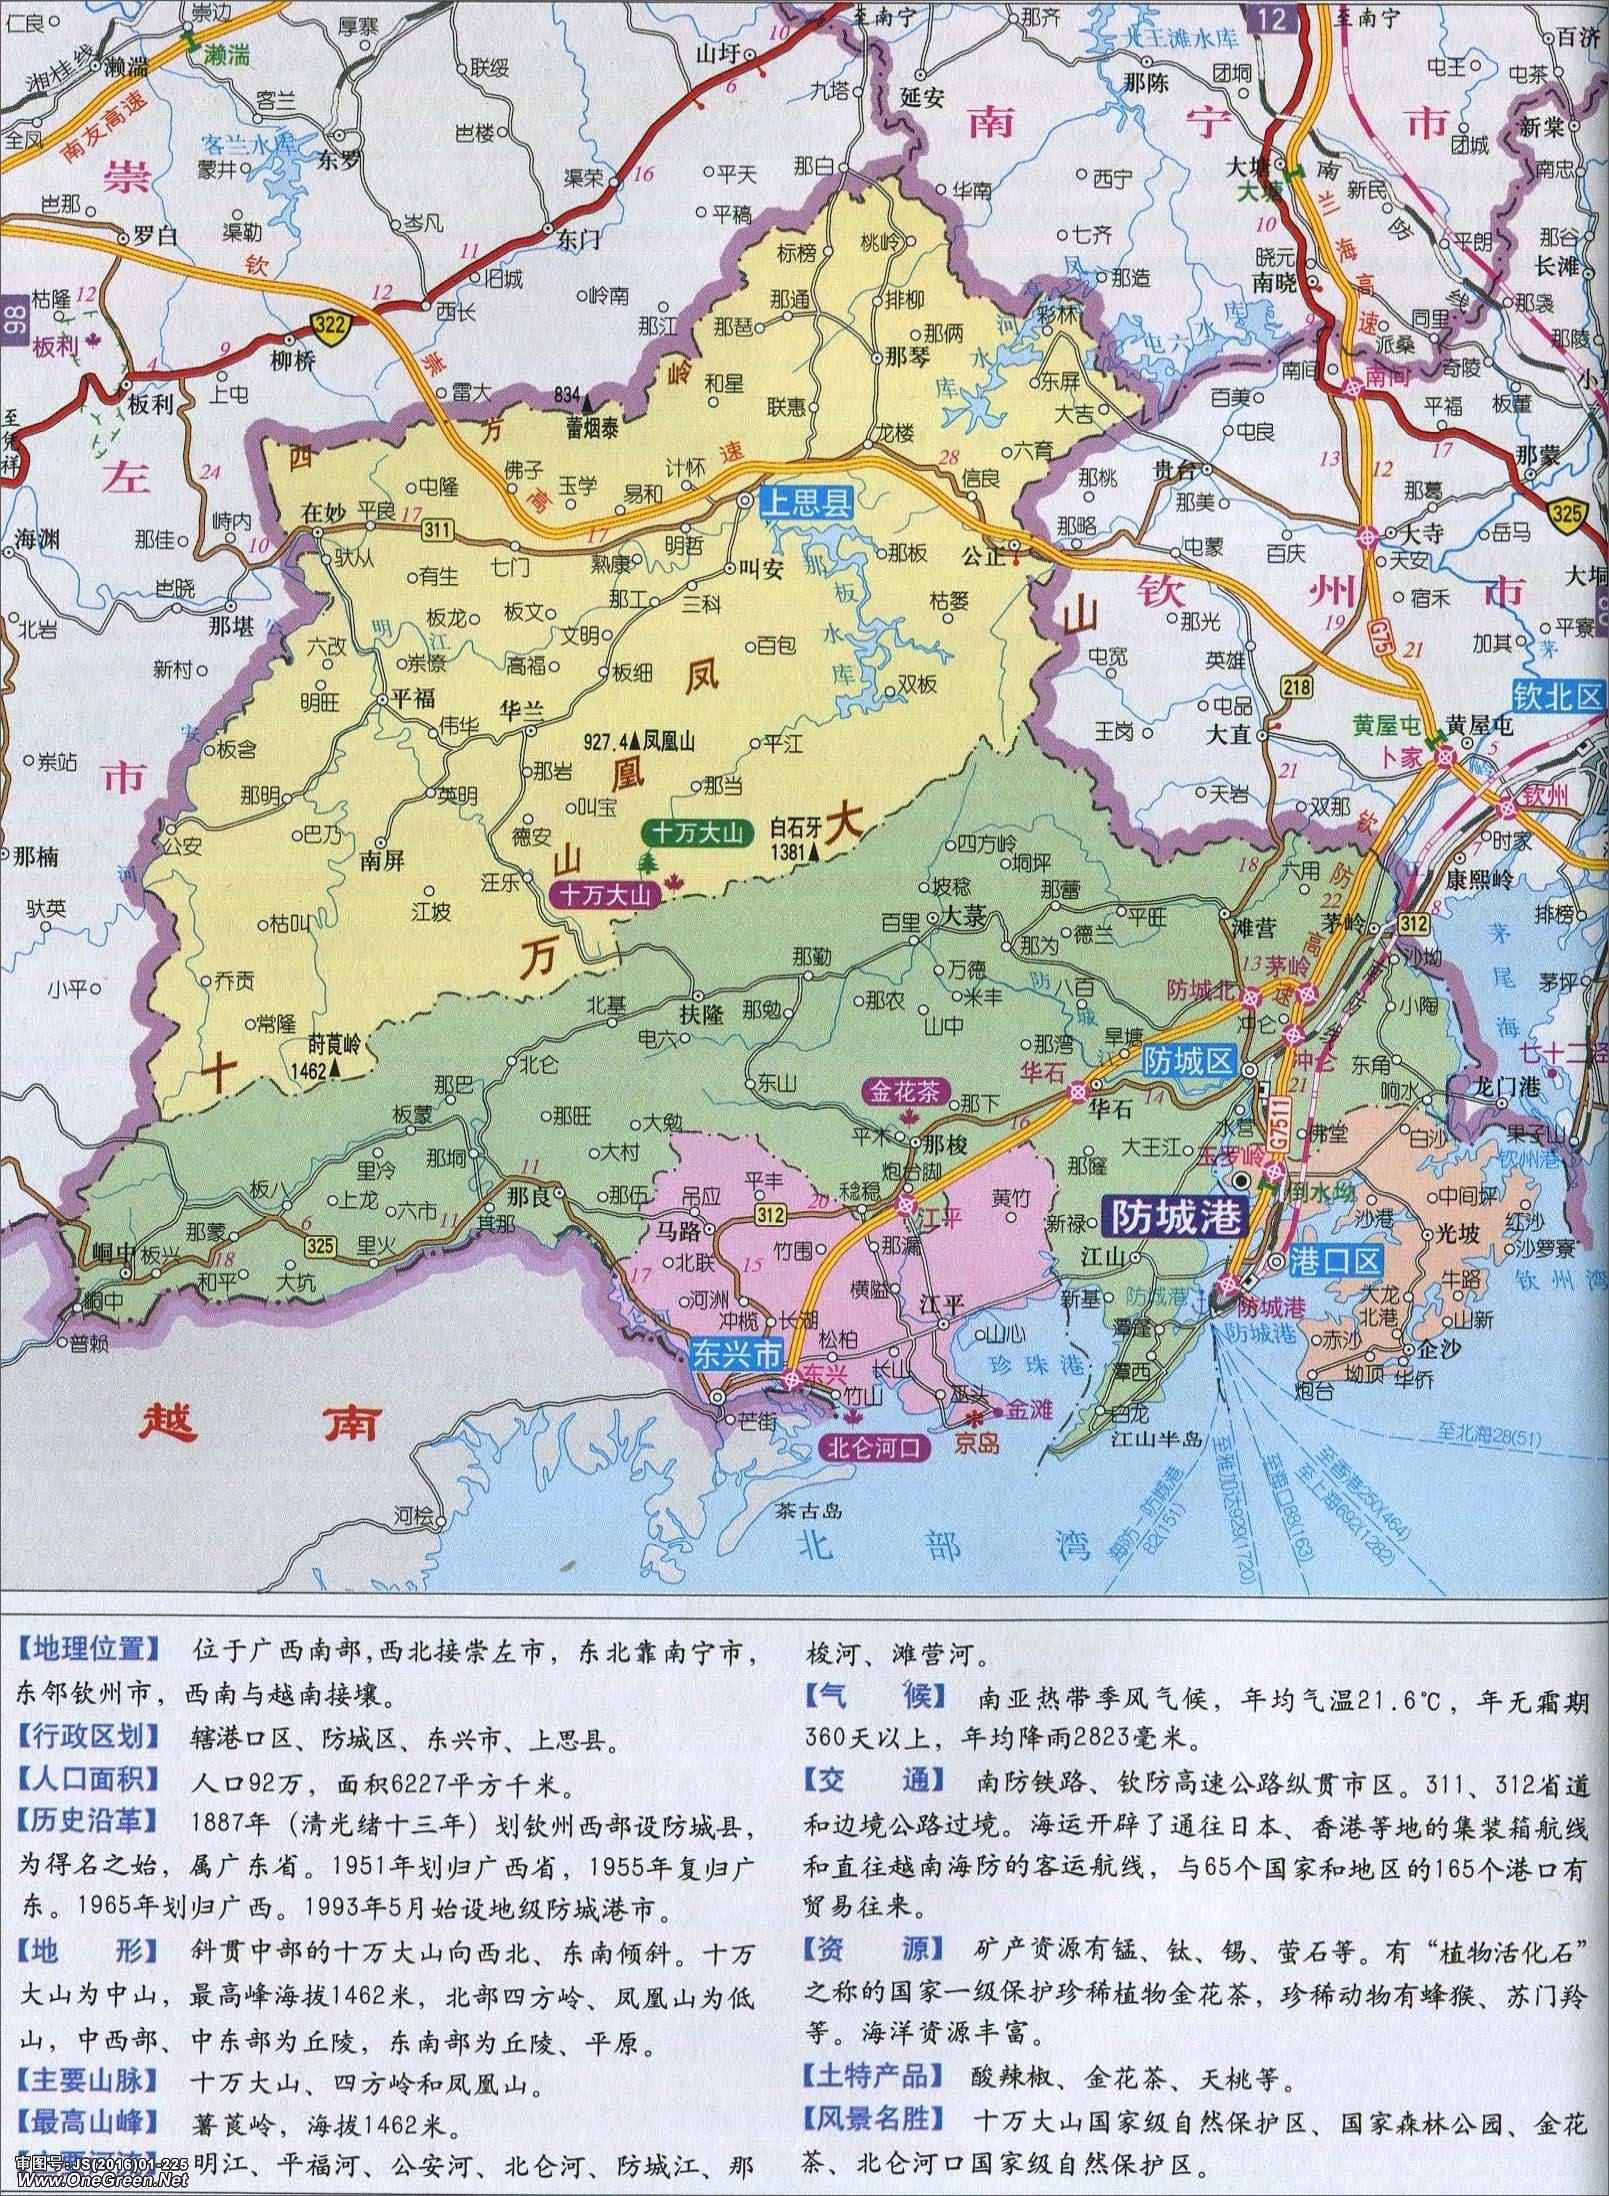 崇左 上一张地图: 没有了  | 防城港 |  下一张地图: 东兴城区地图图片